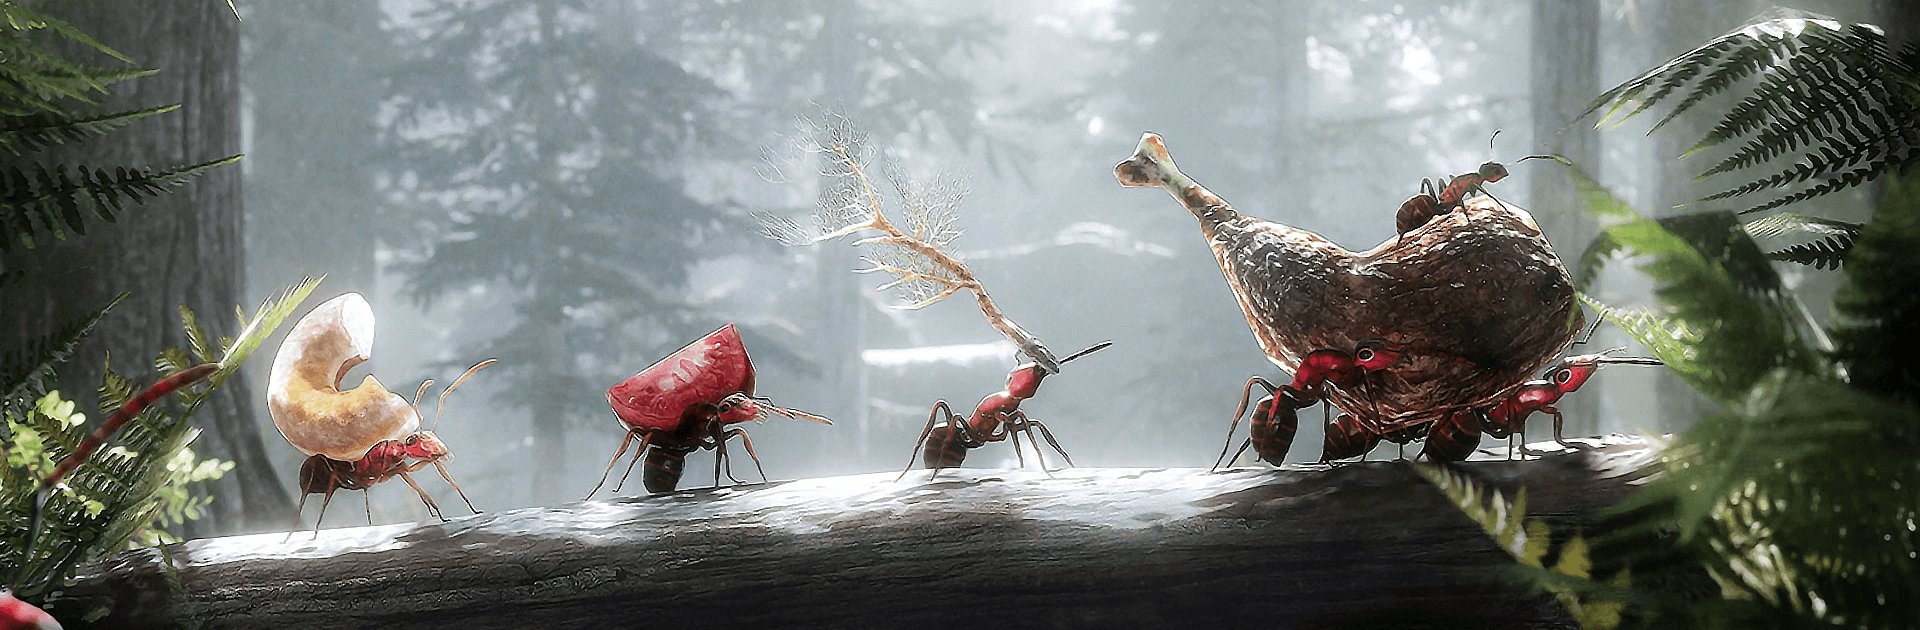 개미 군단